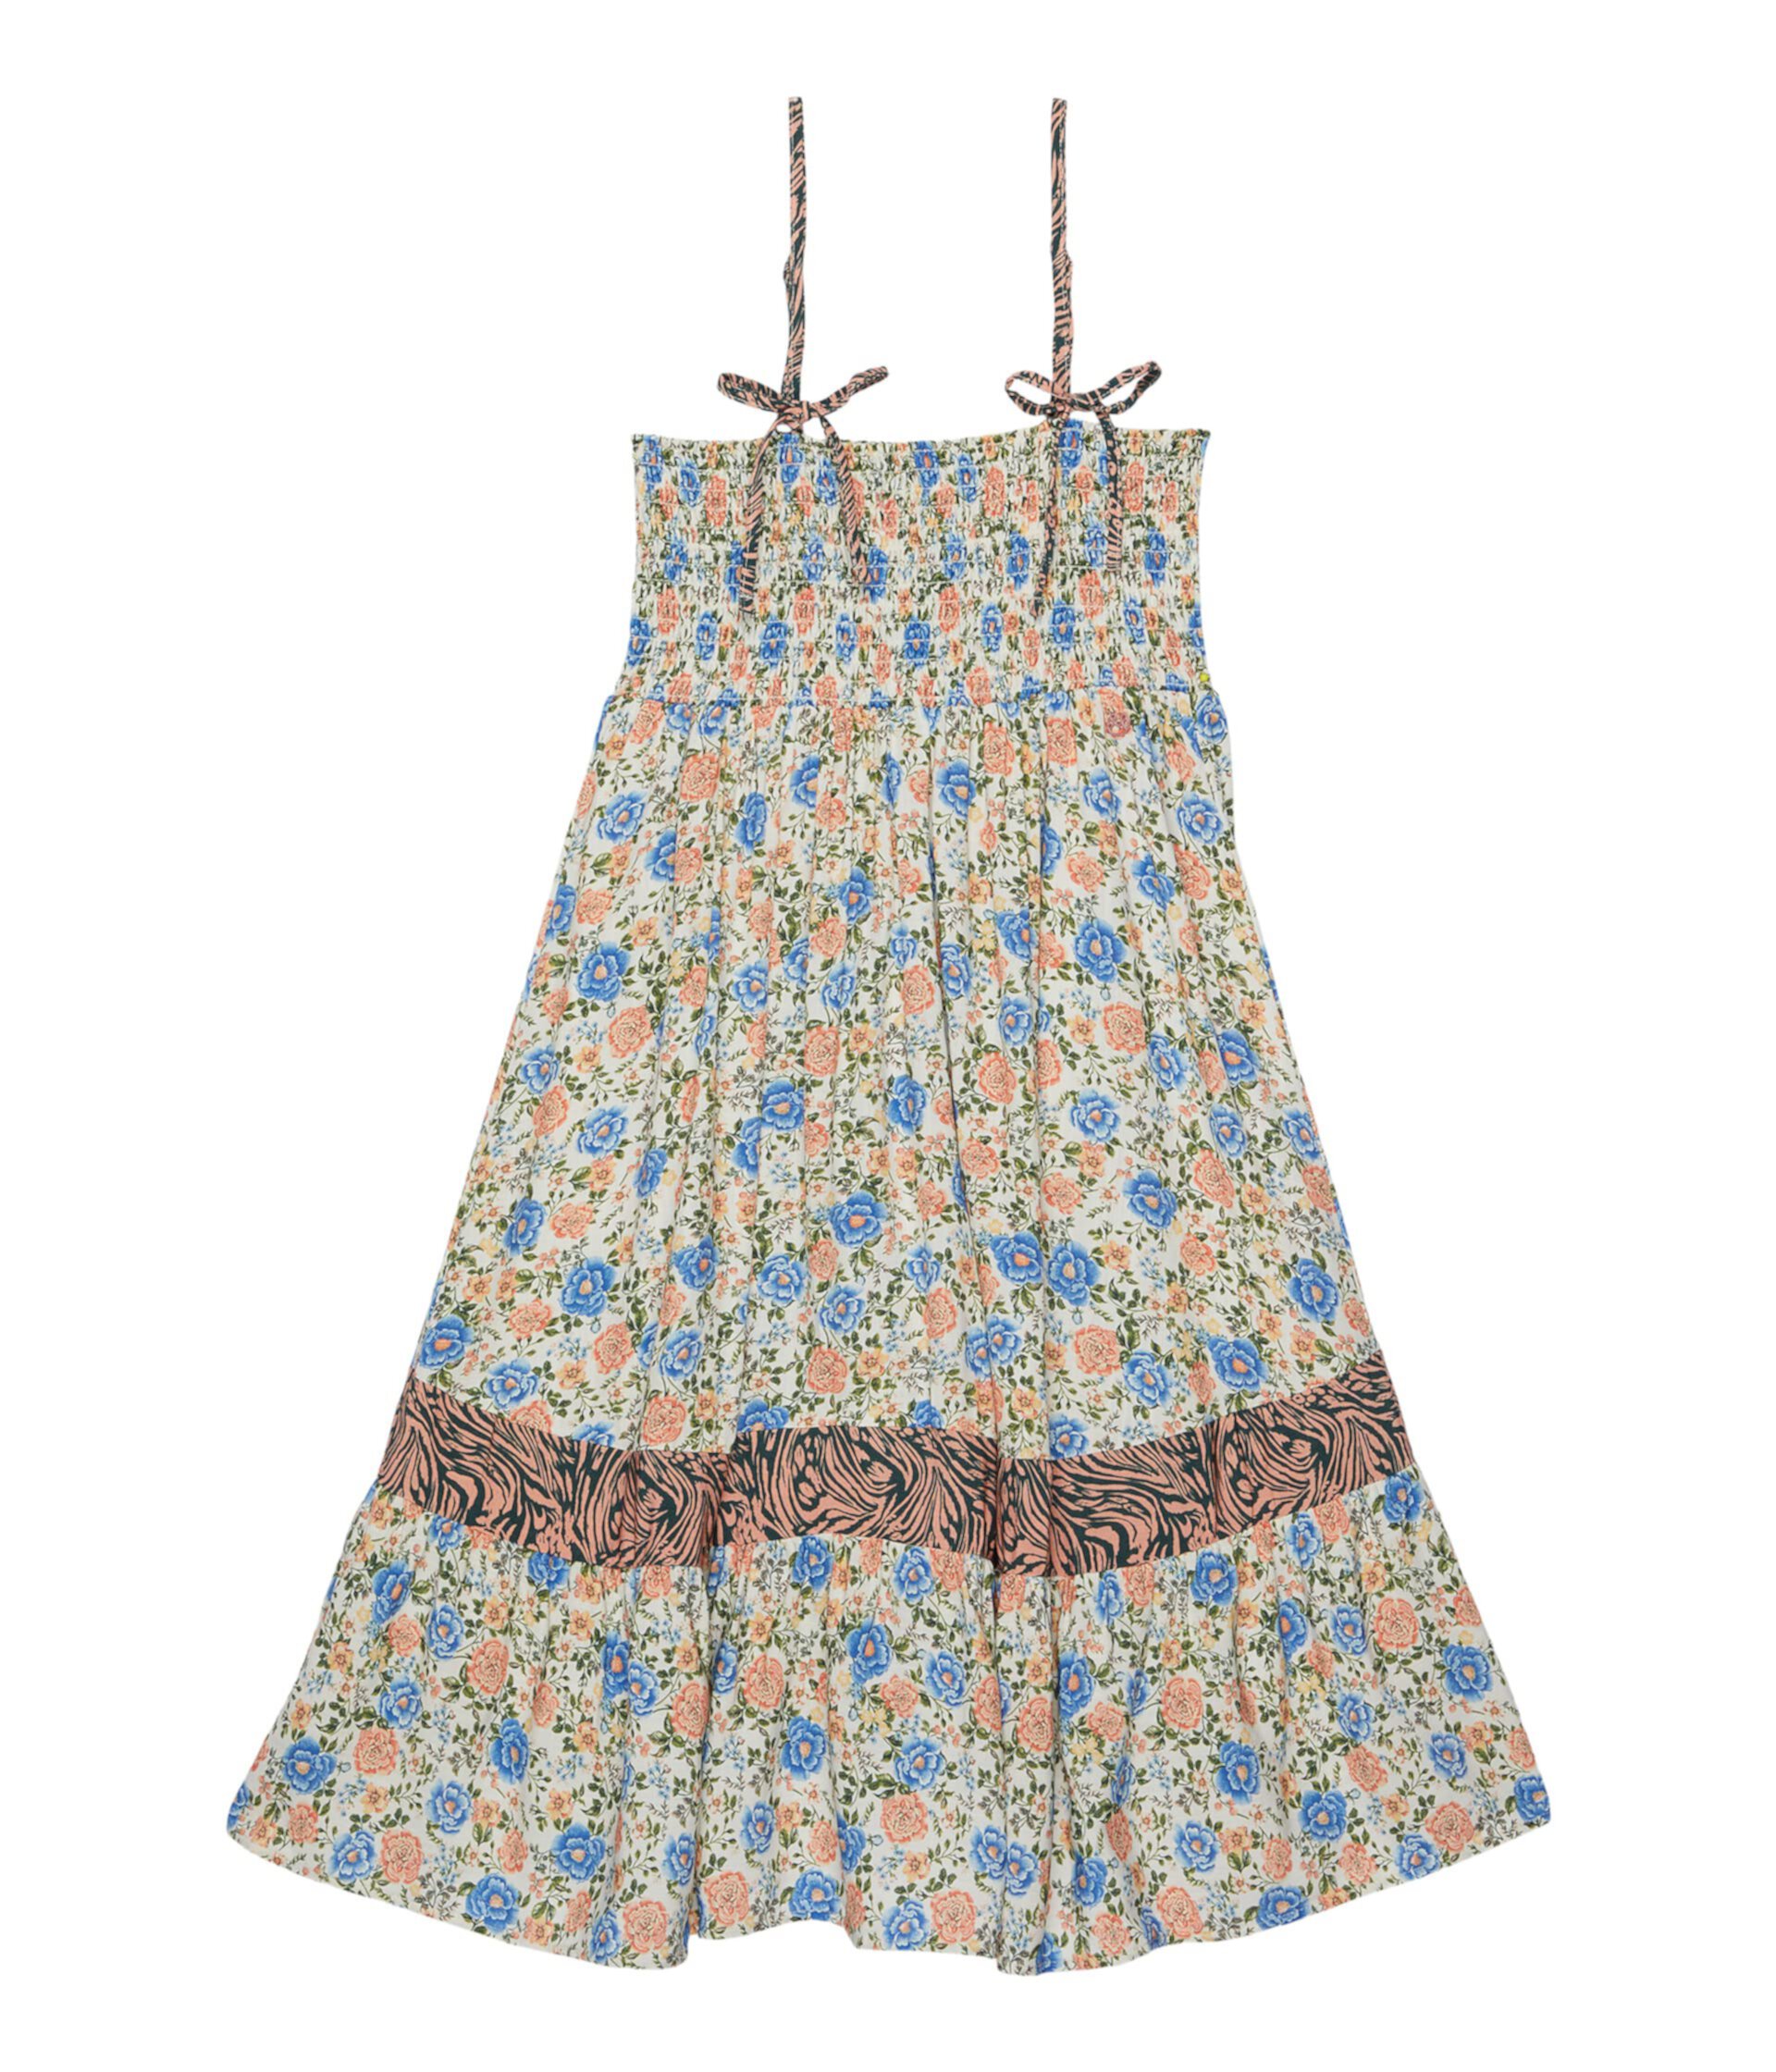 Короткое платье Grandma’s Garden Peyton (для детей младшего и школьного возраста) Maaji Kids